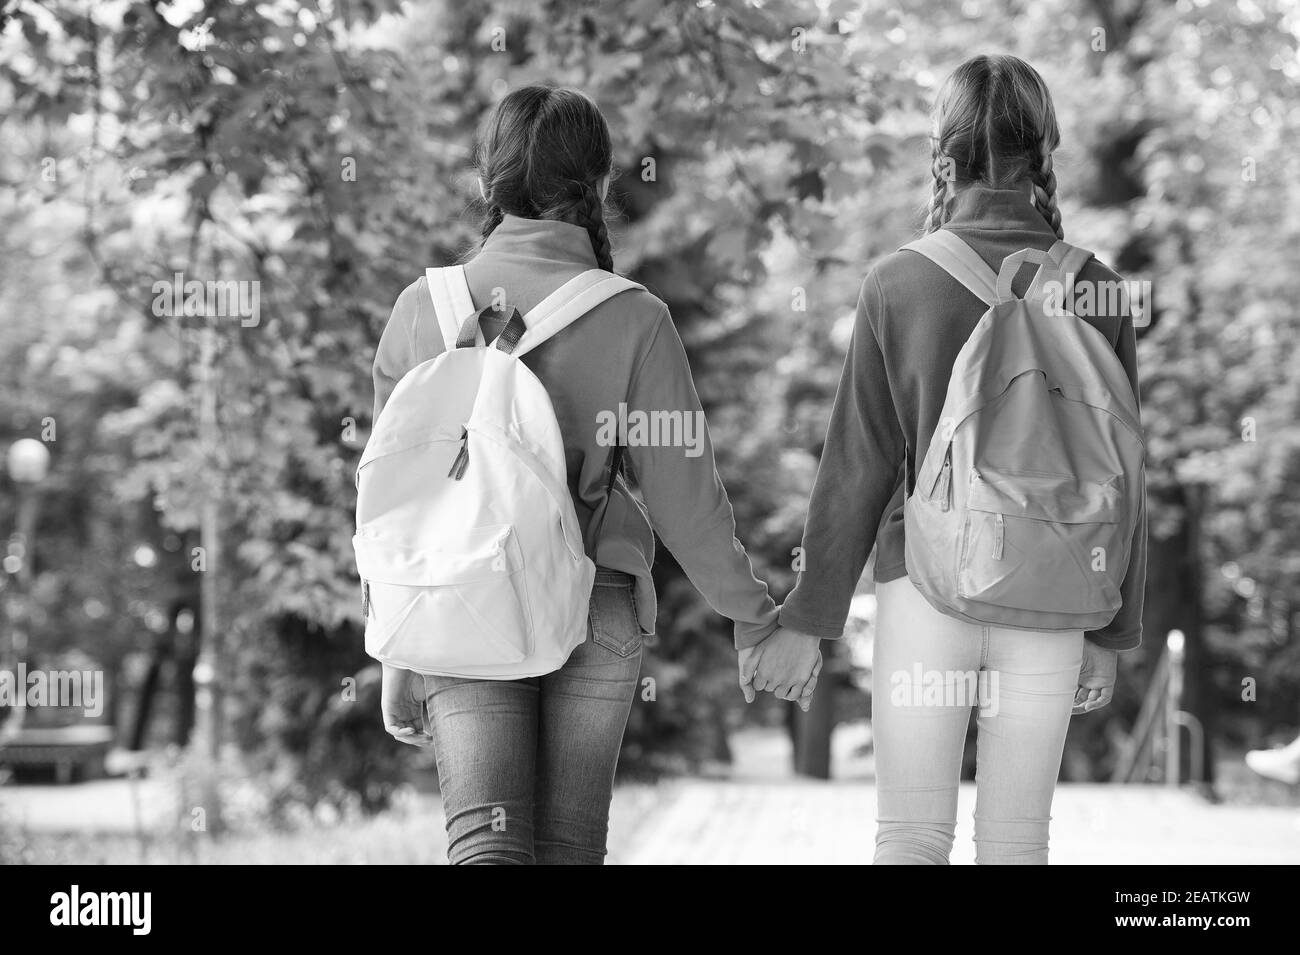 Mädchen Backpacker Freunde Fleece Kleidung Rucksäcke Wald Hintergrund, Hand in Hand Konzept. Stockfoto